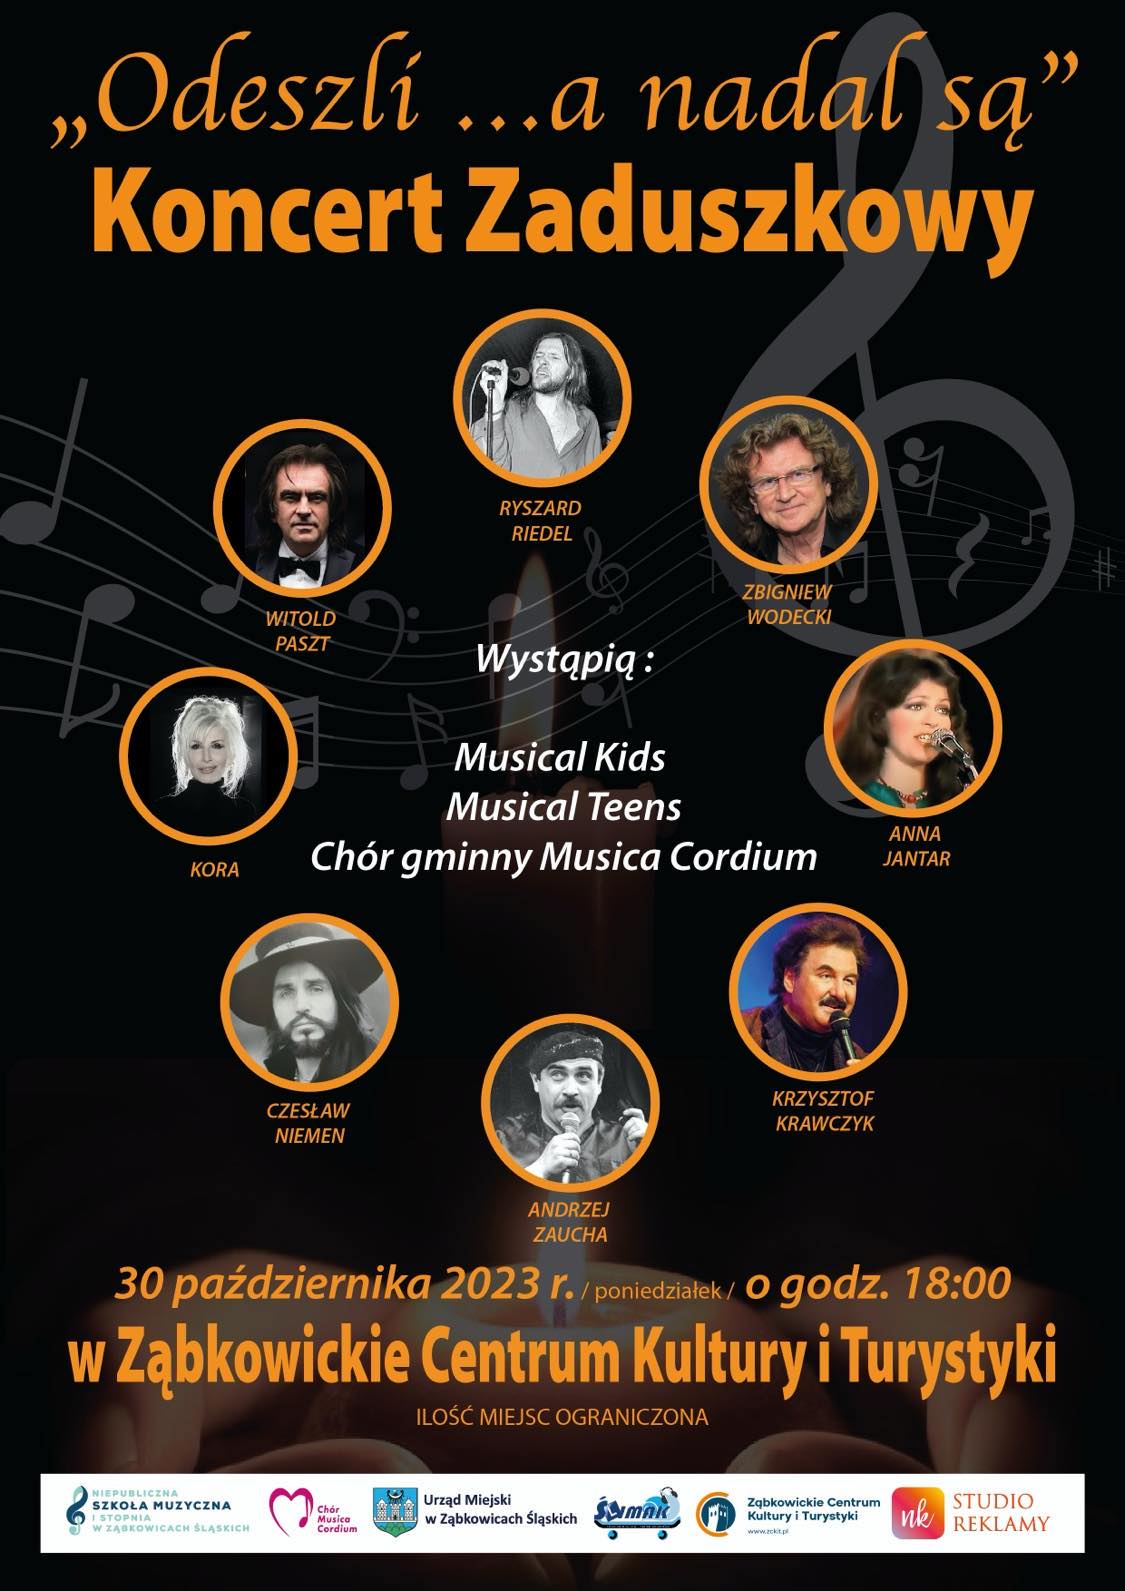 Plakat informacyjny o koncercie zaduszkowym "Odeszli... a nadal są" 30 października 2023 o godzinie 18:00 w Ząbkowickim Centrum Kultury i Turystyki. Na plakacie znajdują się zdjęcia artystów, którzy występują.